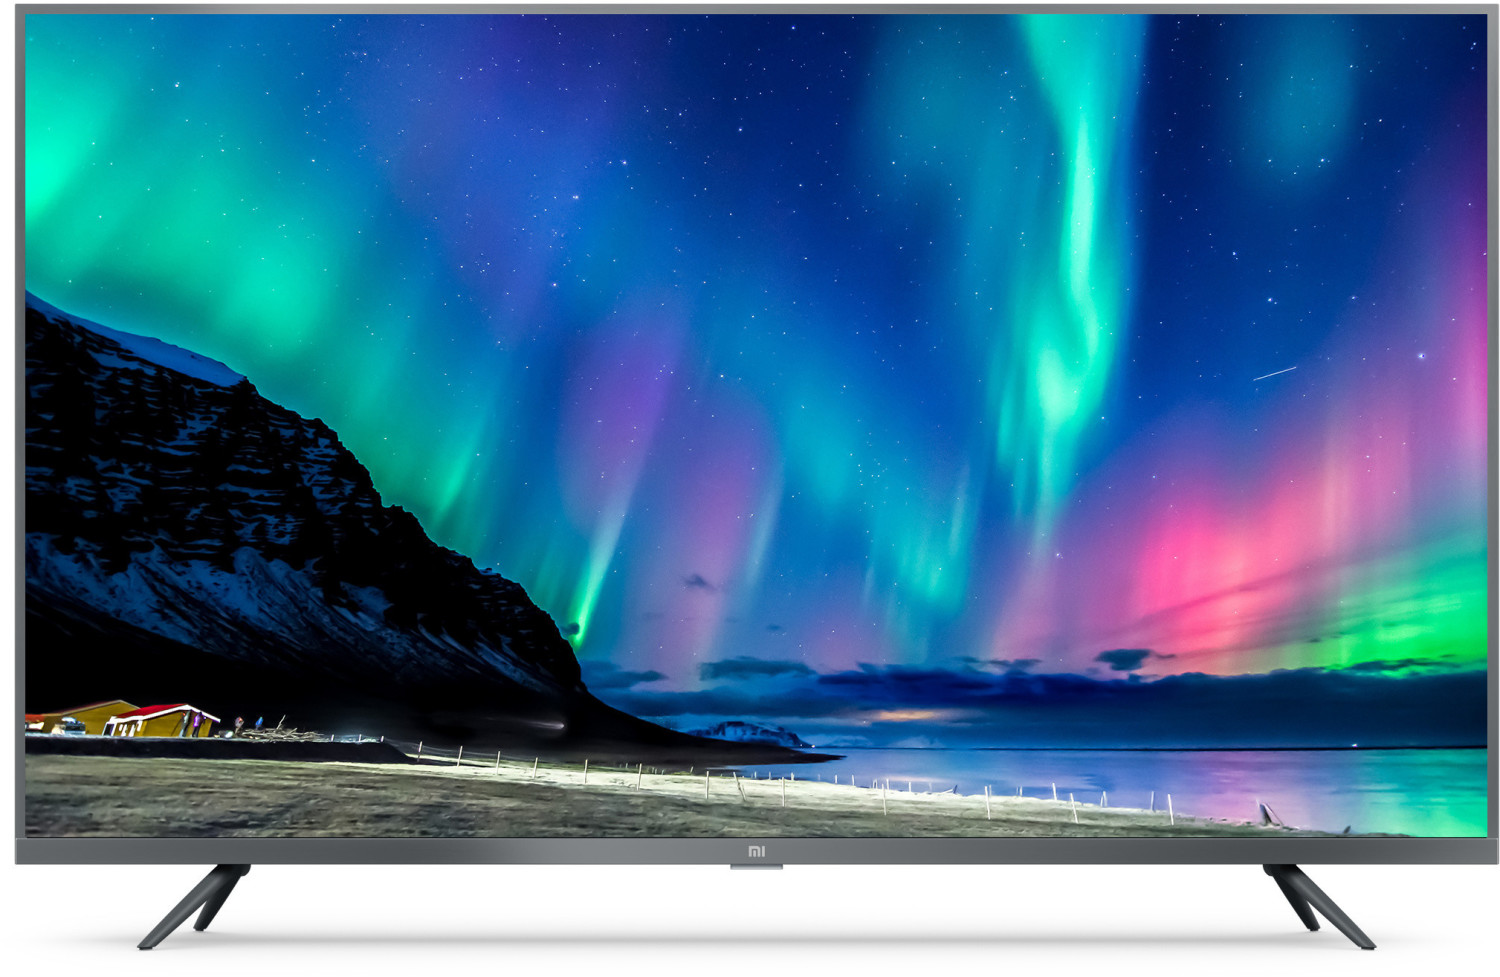  Smart TV LED HD de 32 pulgadas, soporta una resolución